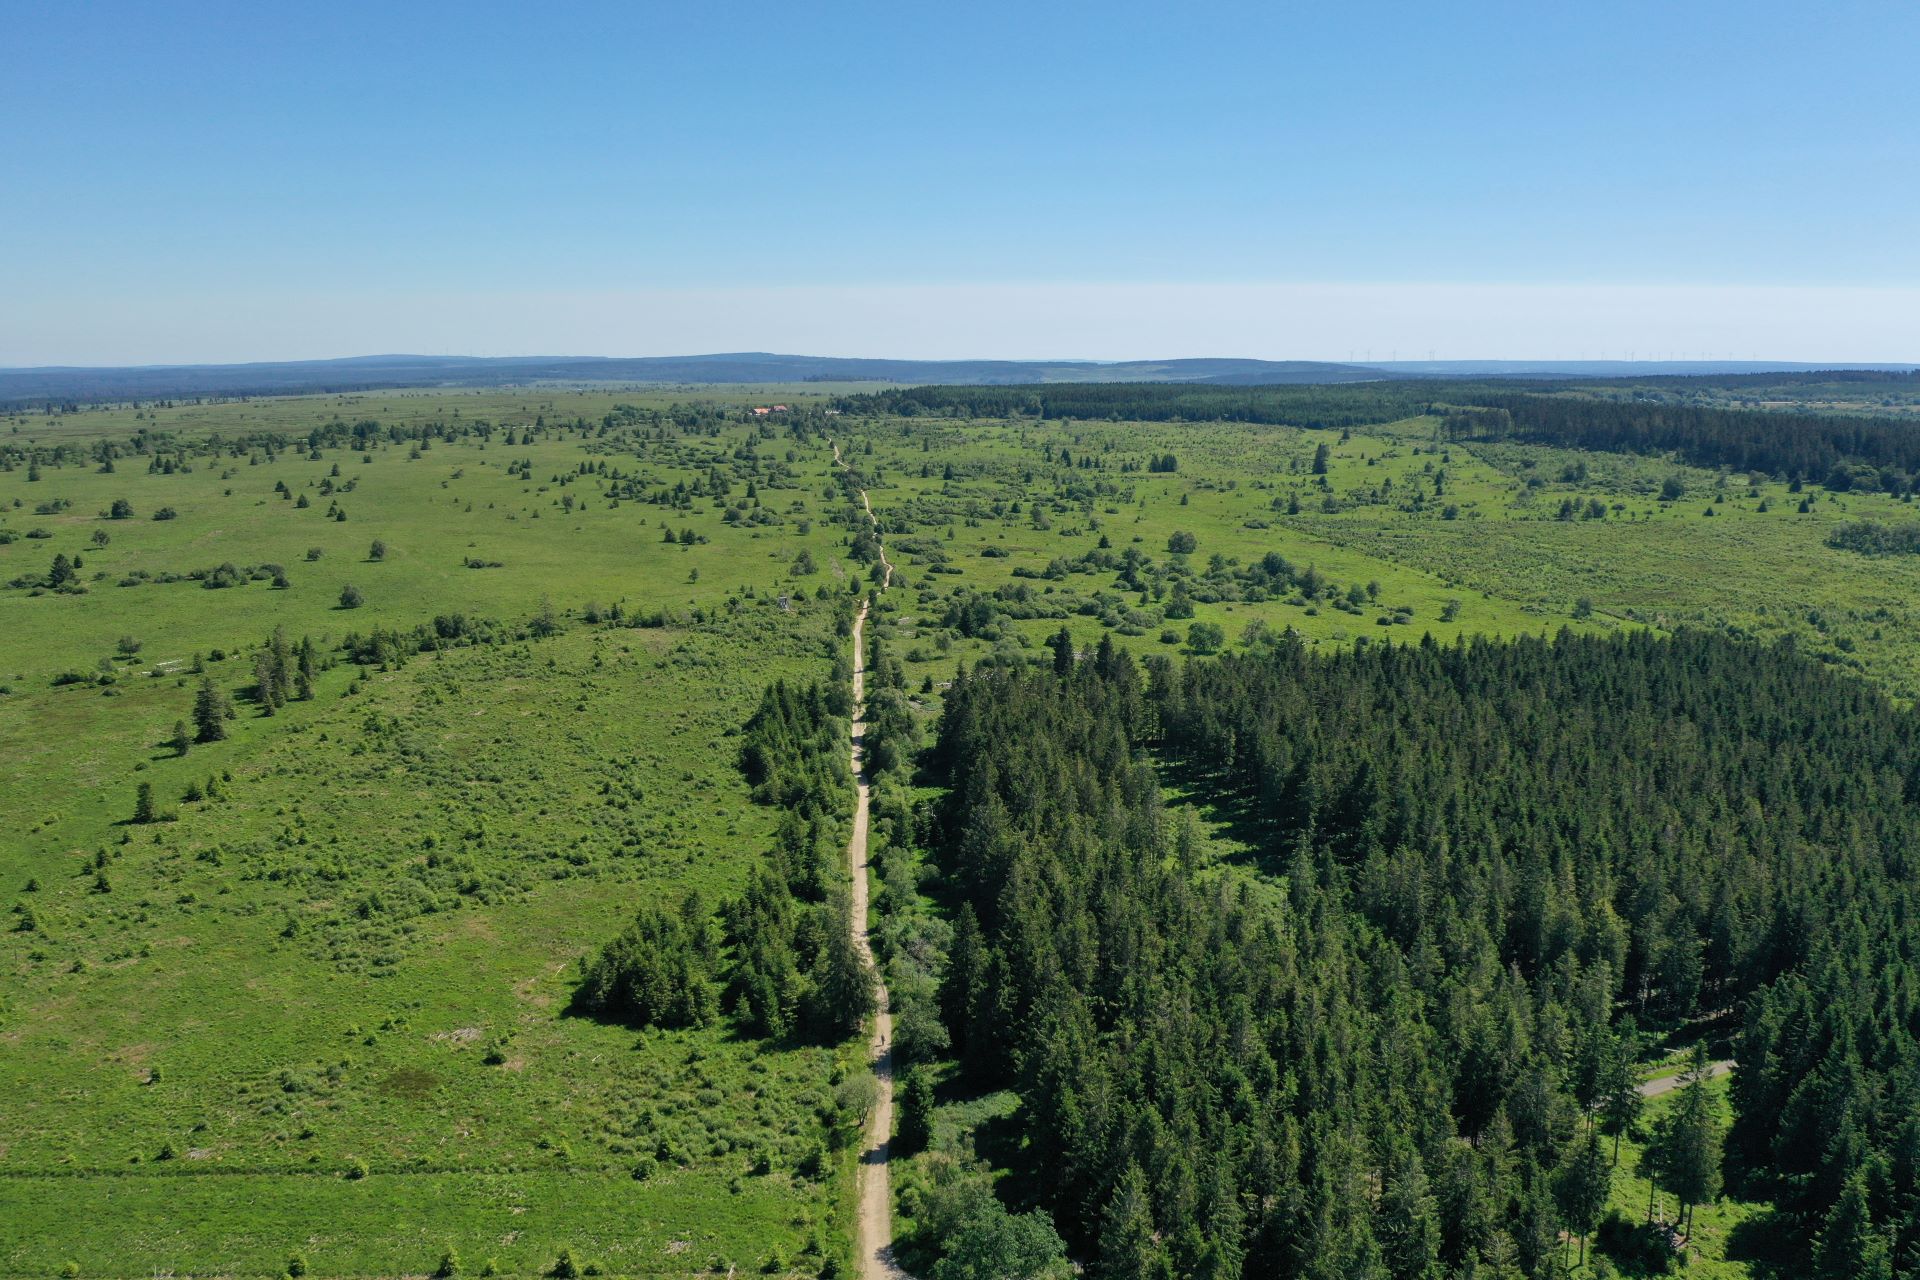 Ein Blick in den Wald fokussiert auf die Unterseiten von Bäumen, die mehrere Meter von der Kamera entfernt sind. Gräser und Grünzeug umgeben die großen Bäume.